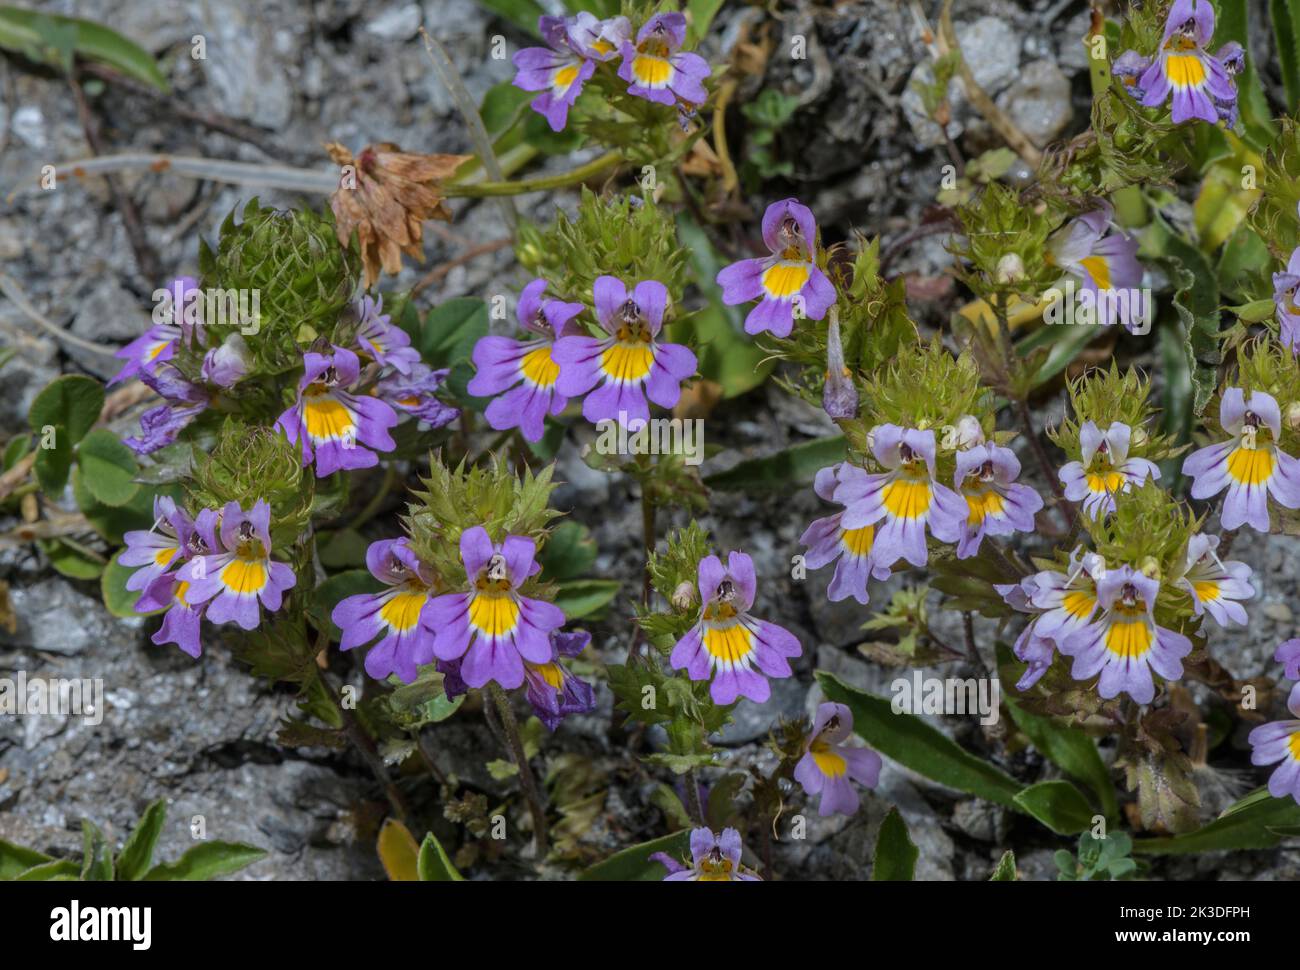 Alpine Eyebright, Euphrasia alpina in flower on the Colle dell’Agnello, Italian Alps. Stock Photo